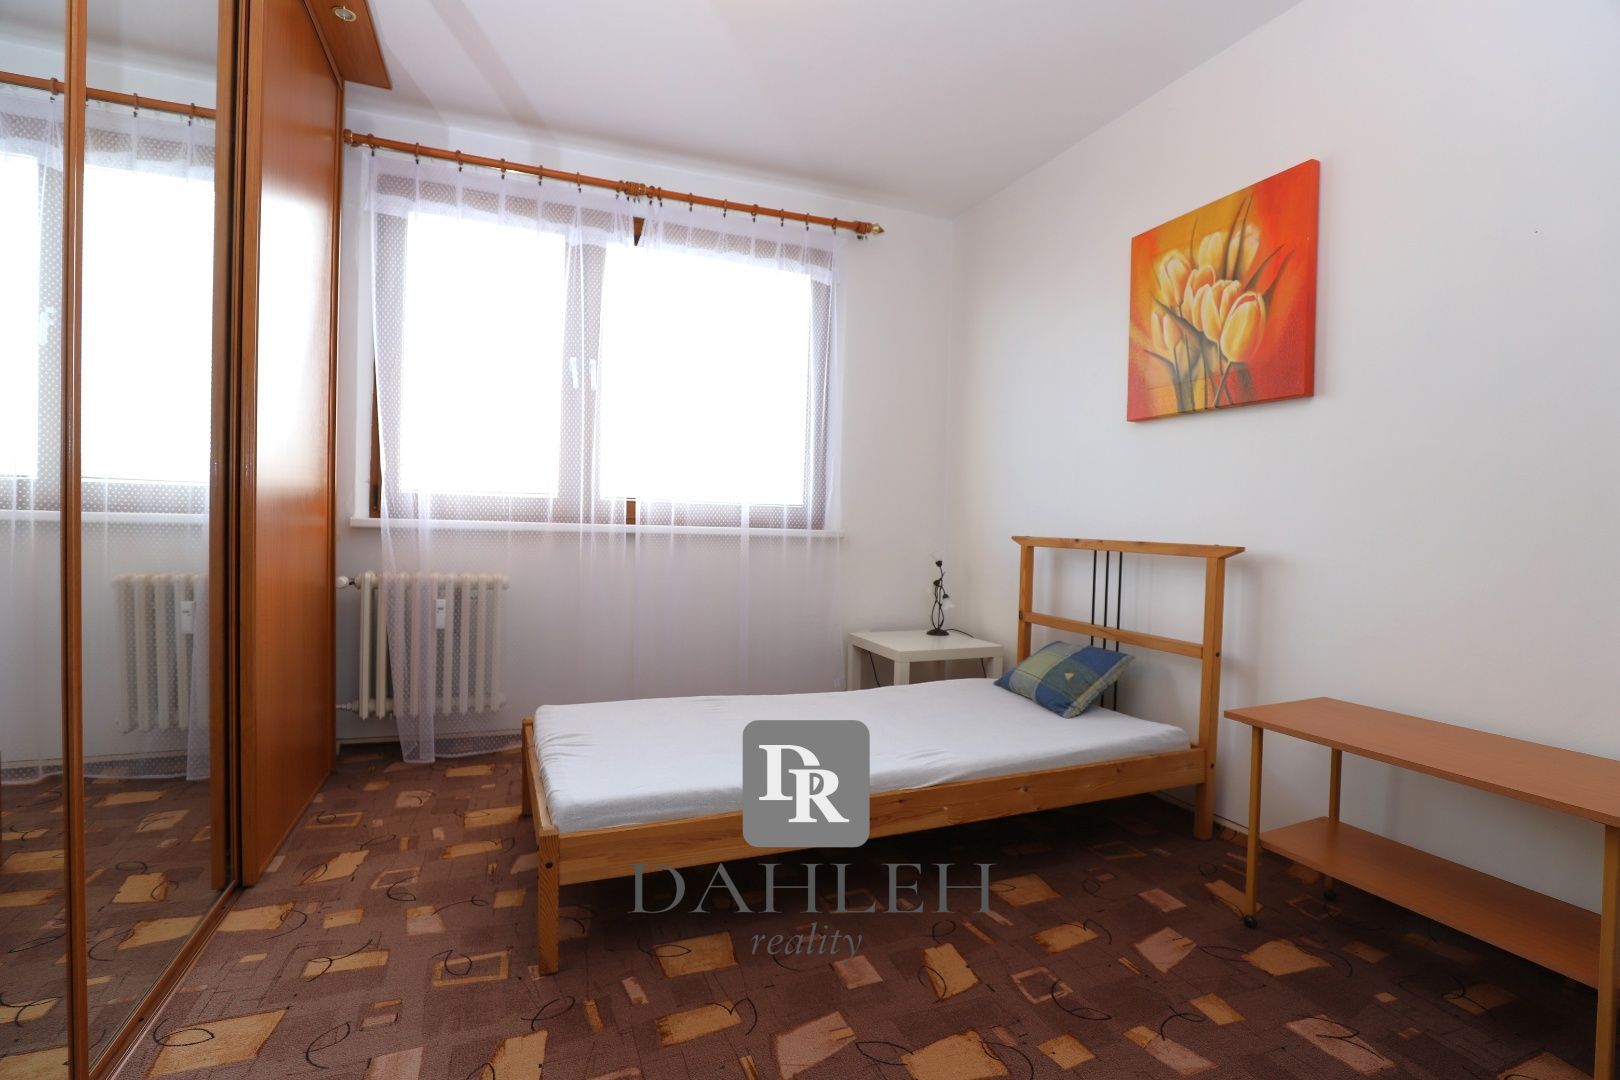 DAHLEH - Na prenájom priestranný 4 - izbový byt vo Vrakuni